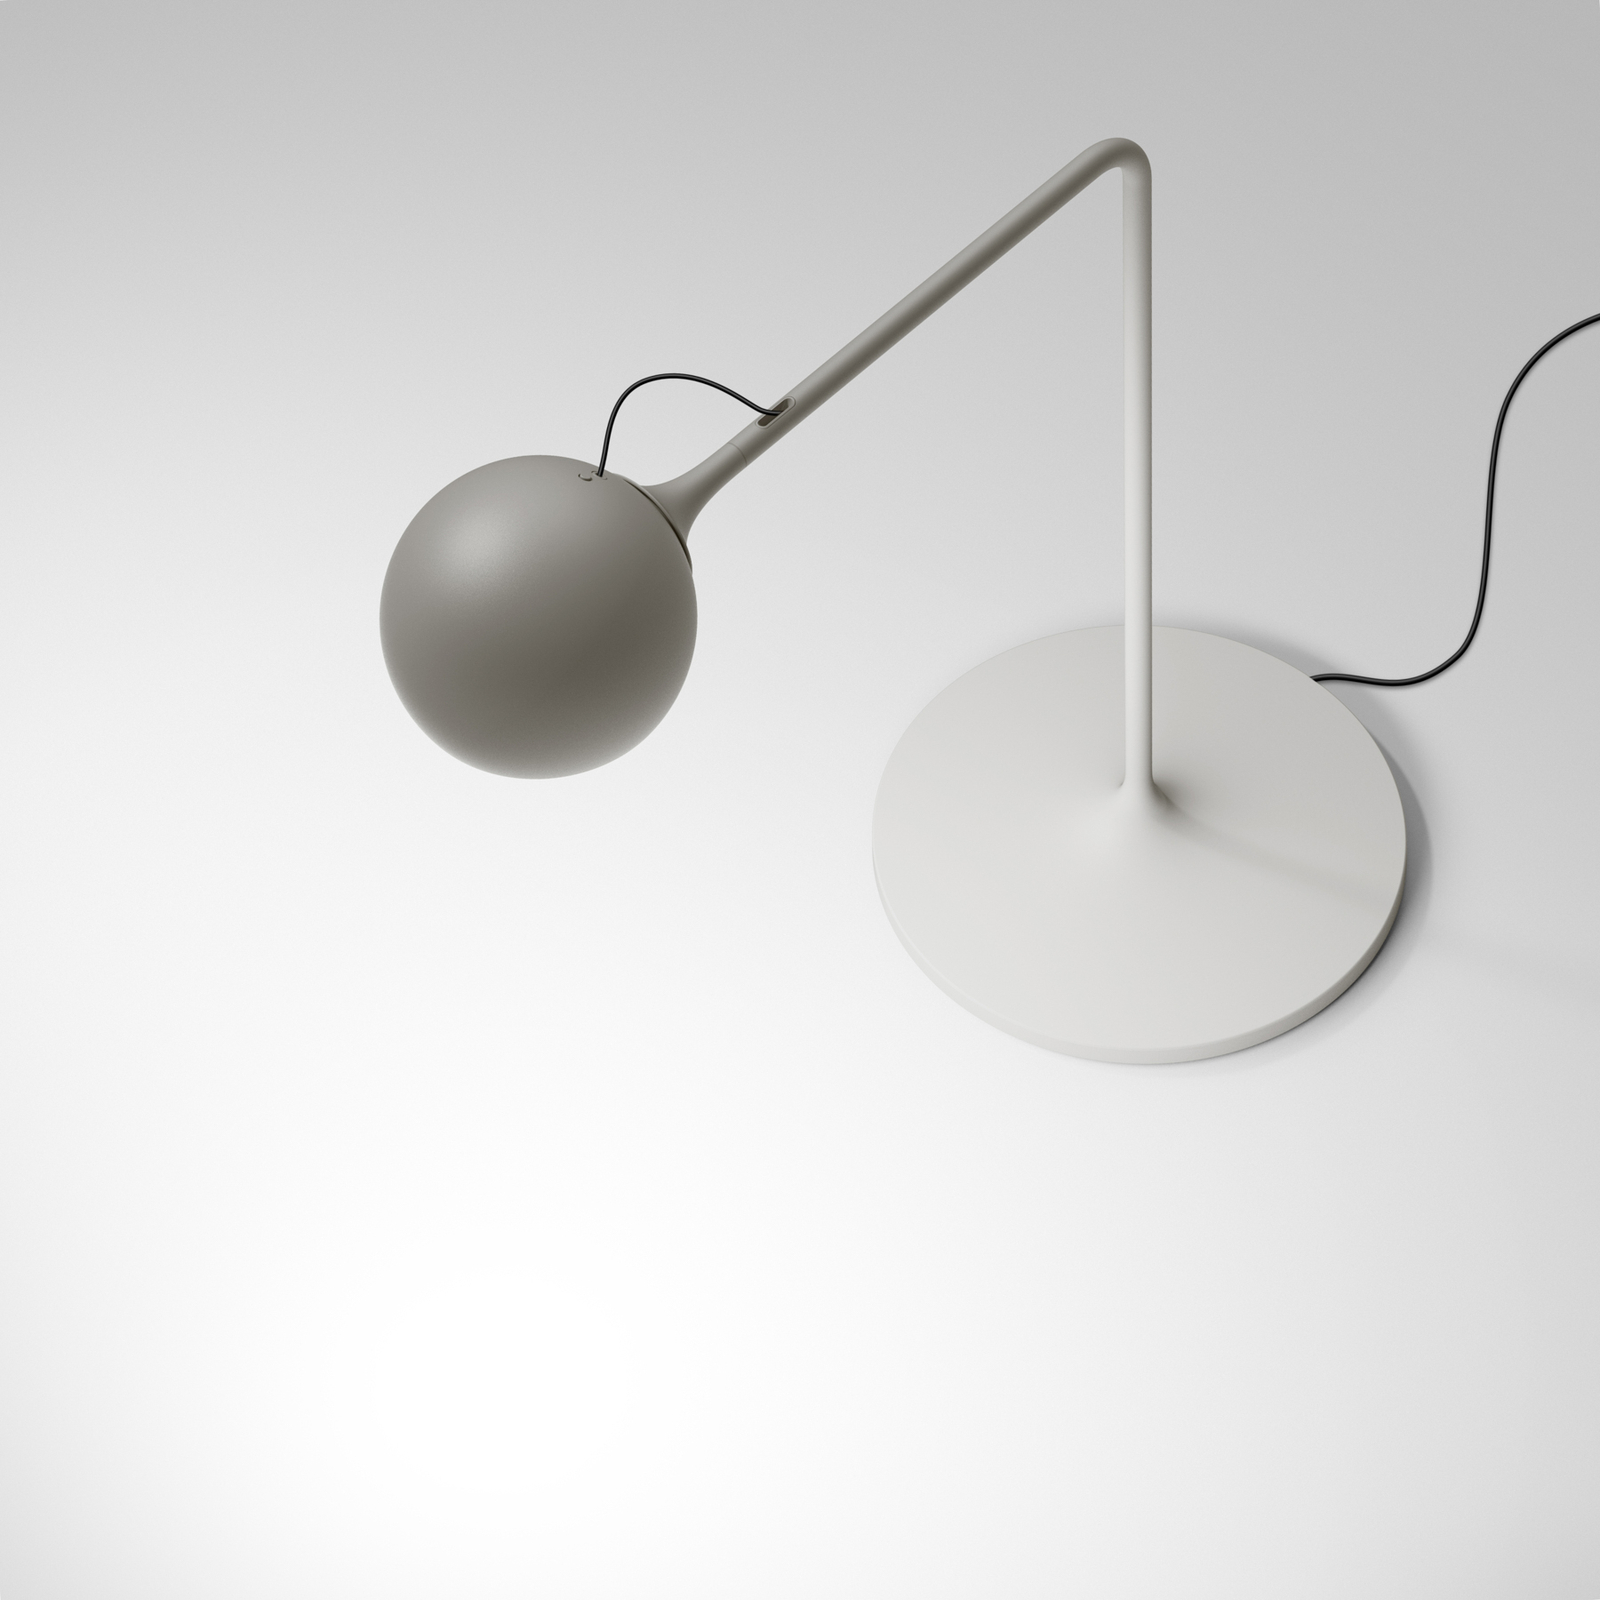 Artemide Ixa stolová LED lampa, bielo-sivá